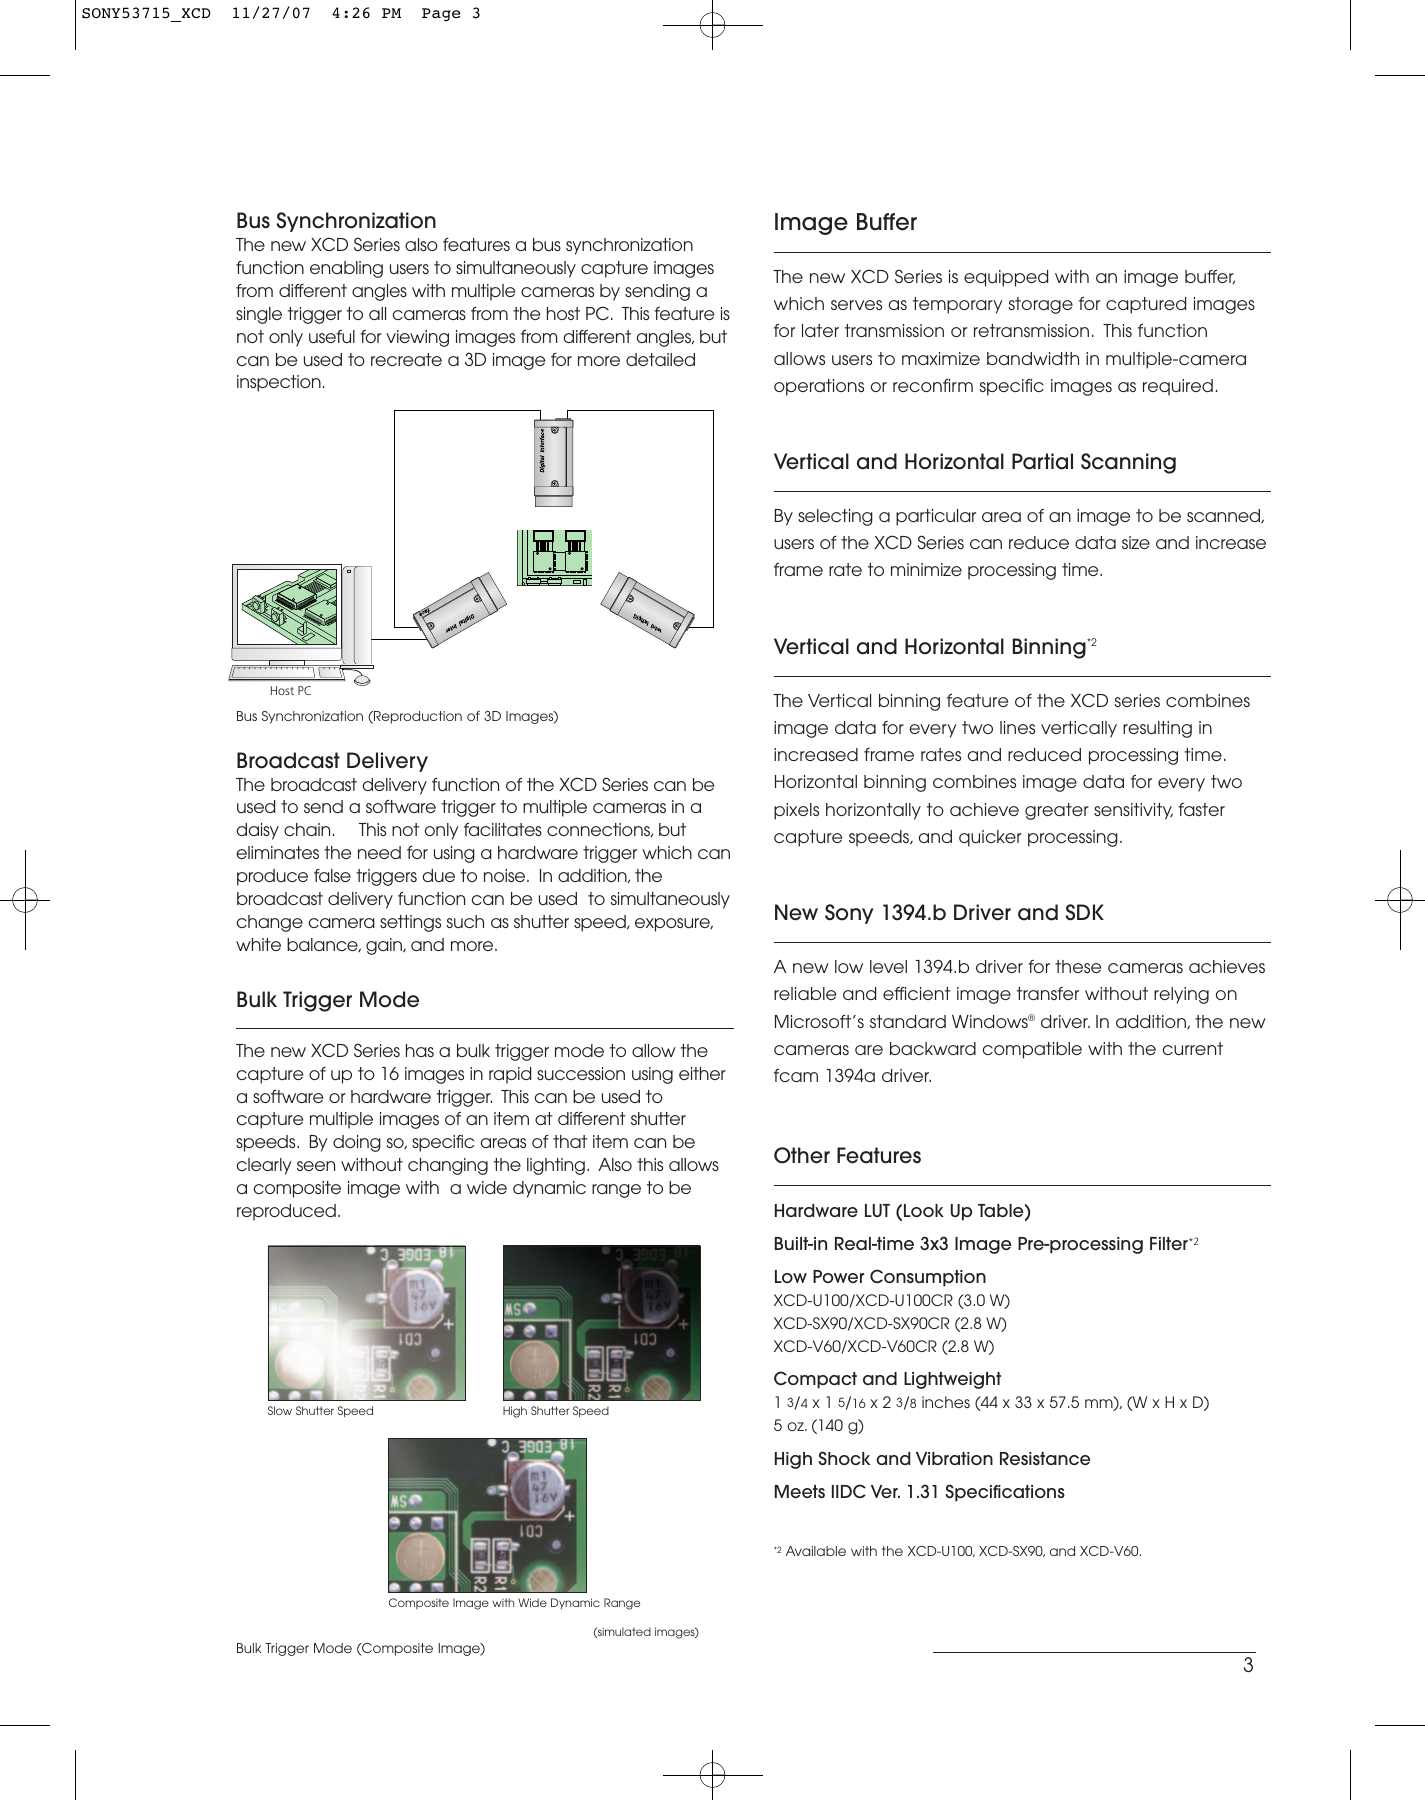 Page 3 of 4 - Motorola Motorola-Ieee-1394-B-Users-Manual- SONY53715_XCD  Motorola-ieee-1394-b-users-manual